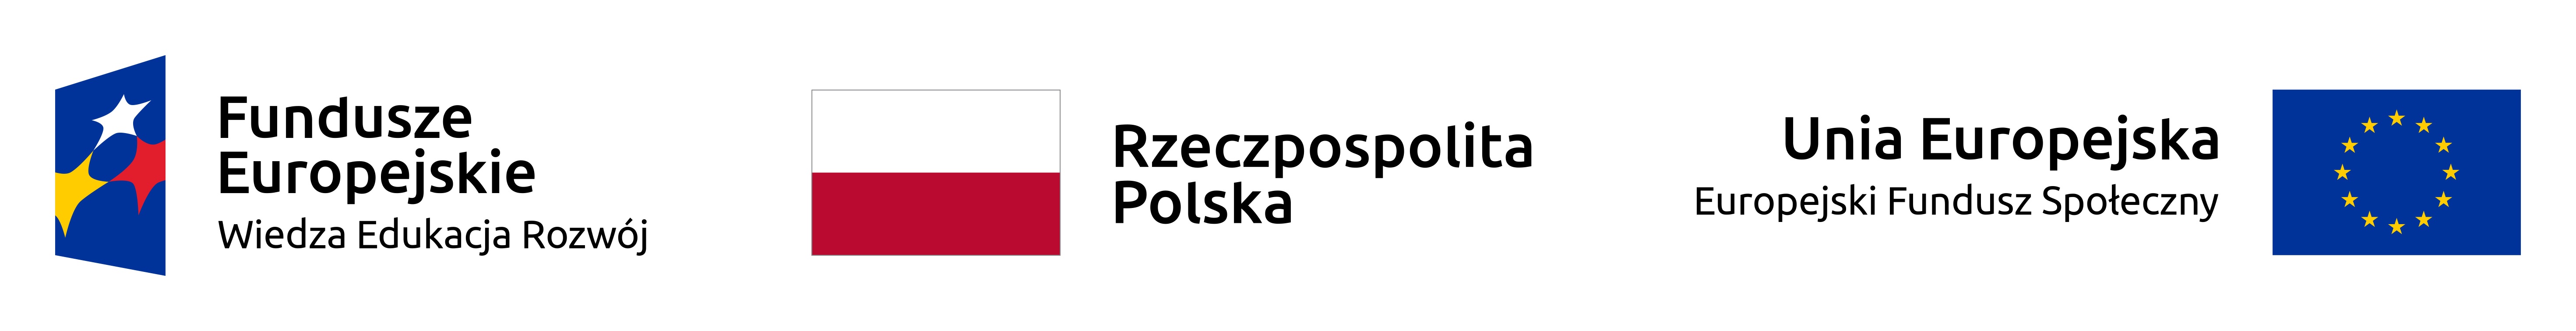 Logotyp Fundusze Europejskie Wiedza Edukacja Rozwój; Logotyp Rzeczpospolitej Polskiej oraz logotym Unia Europejska Europejski Fundusz Społeczny